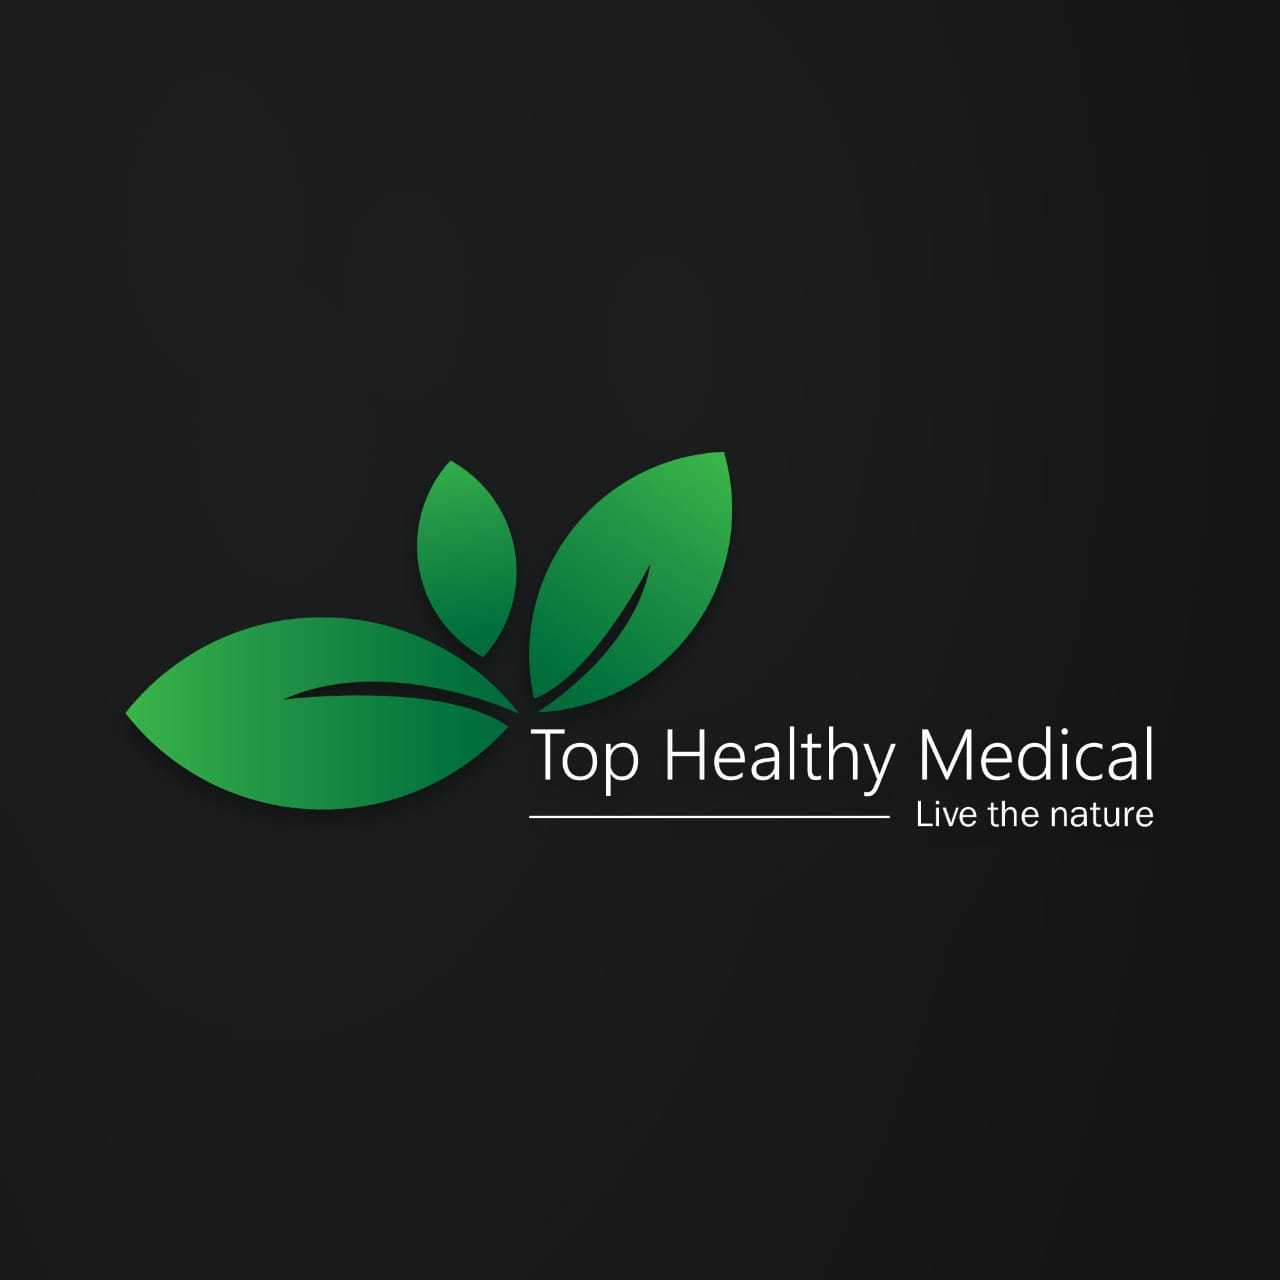 TOP HEALTHY MEDICAL